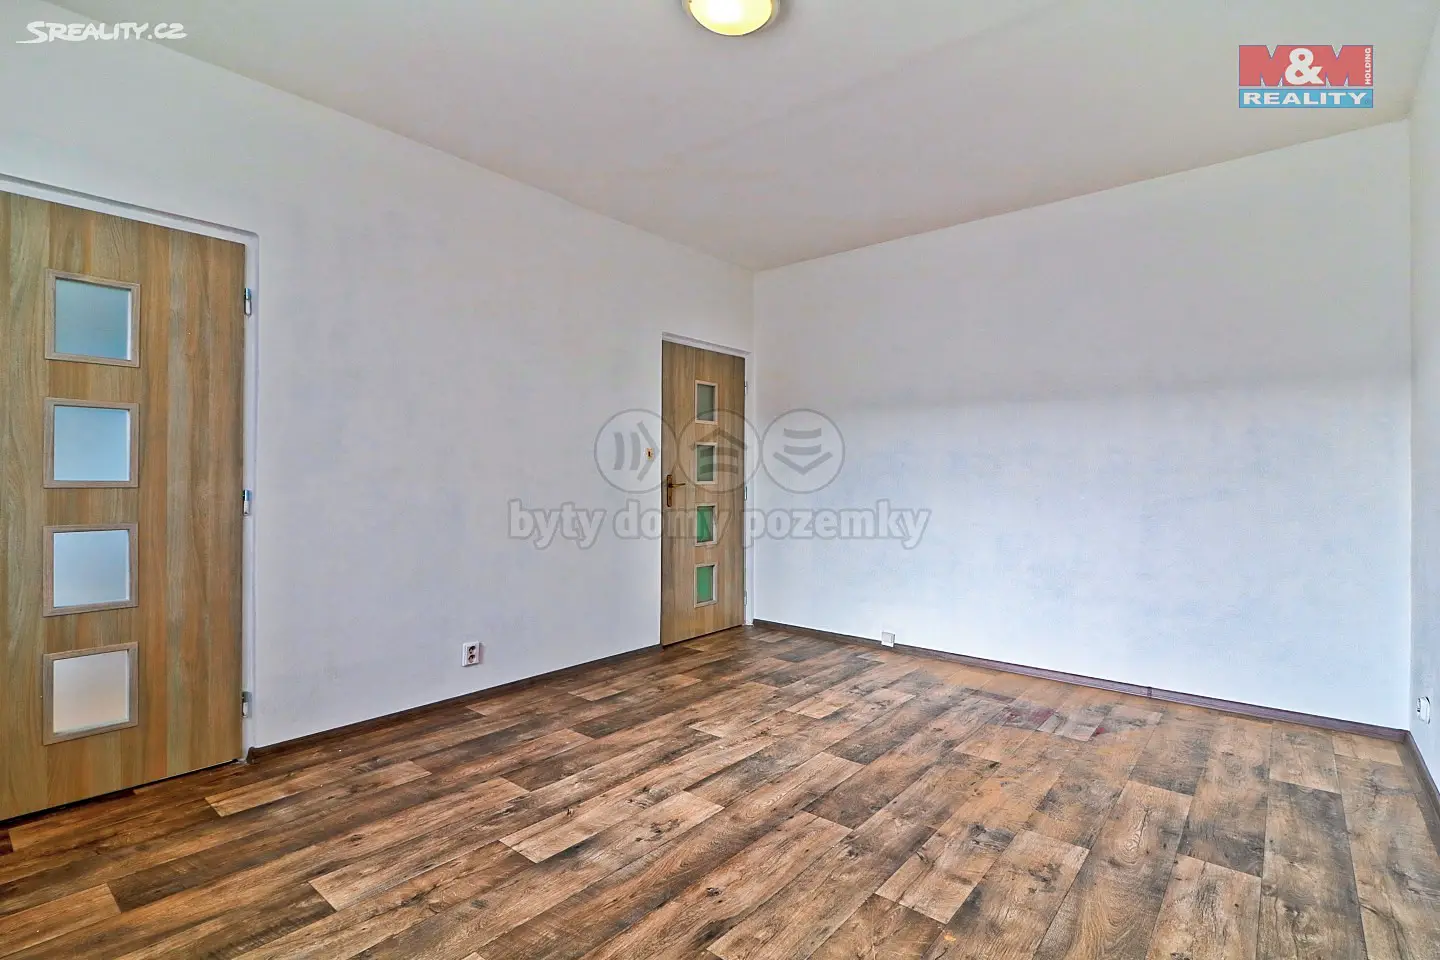 Pronájem bytu 1+1 40 m², Truhlářská, Hradec Králové - Věkoše